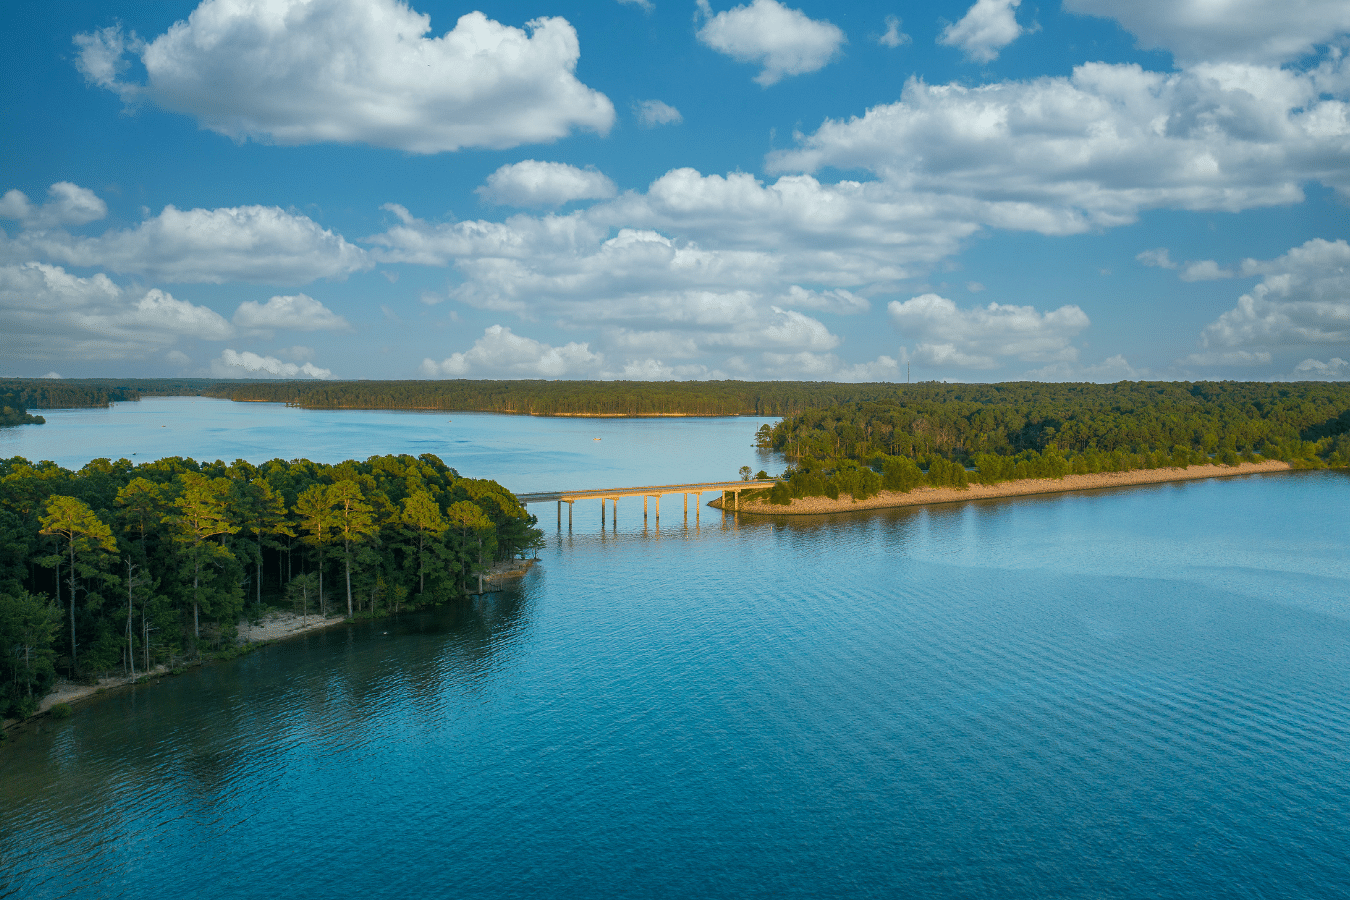 Jordan Lake in Apex, North Carolina